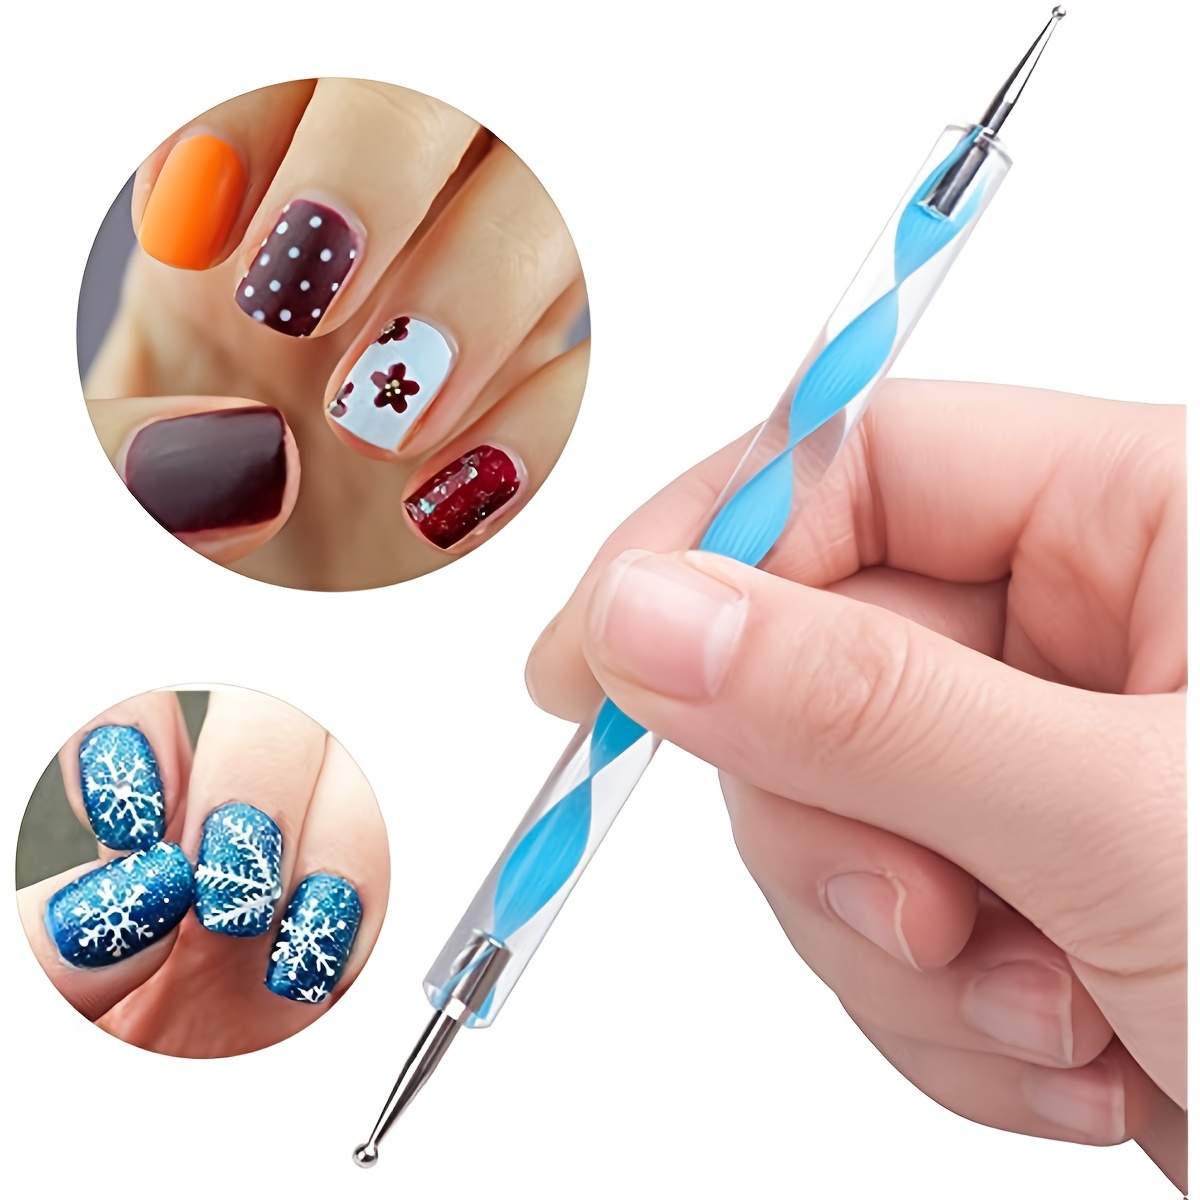 Nail polish and gel nail polish dotting tool